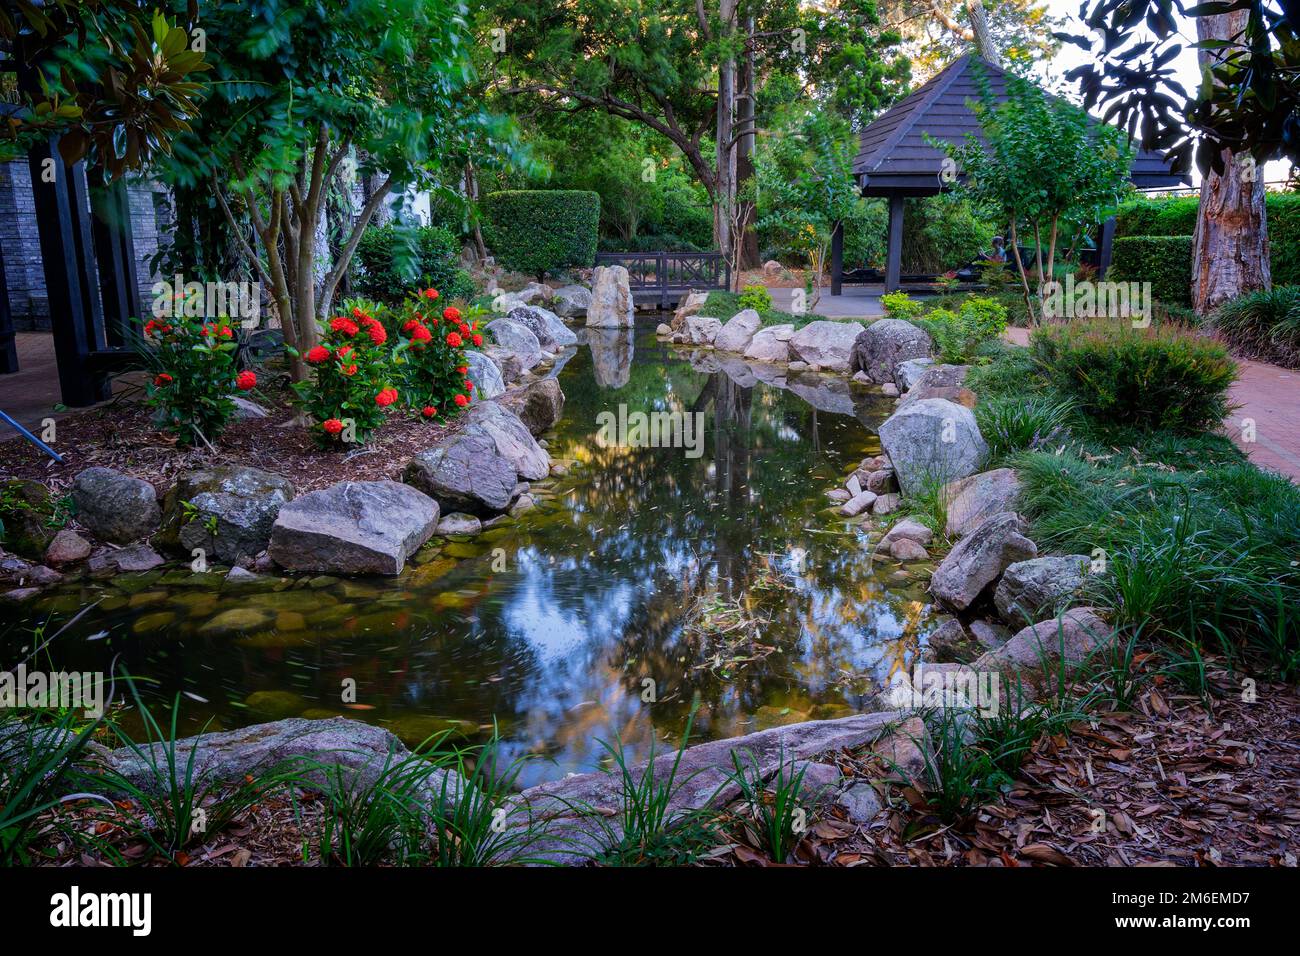 Fuente de agua de inspiración china jardín formal, puerta de la luna y jardín zen. Hervey Bay Botanic Gardens, Urangan Hervey Bay Queensland Australia Foto de stock